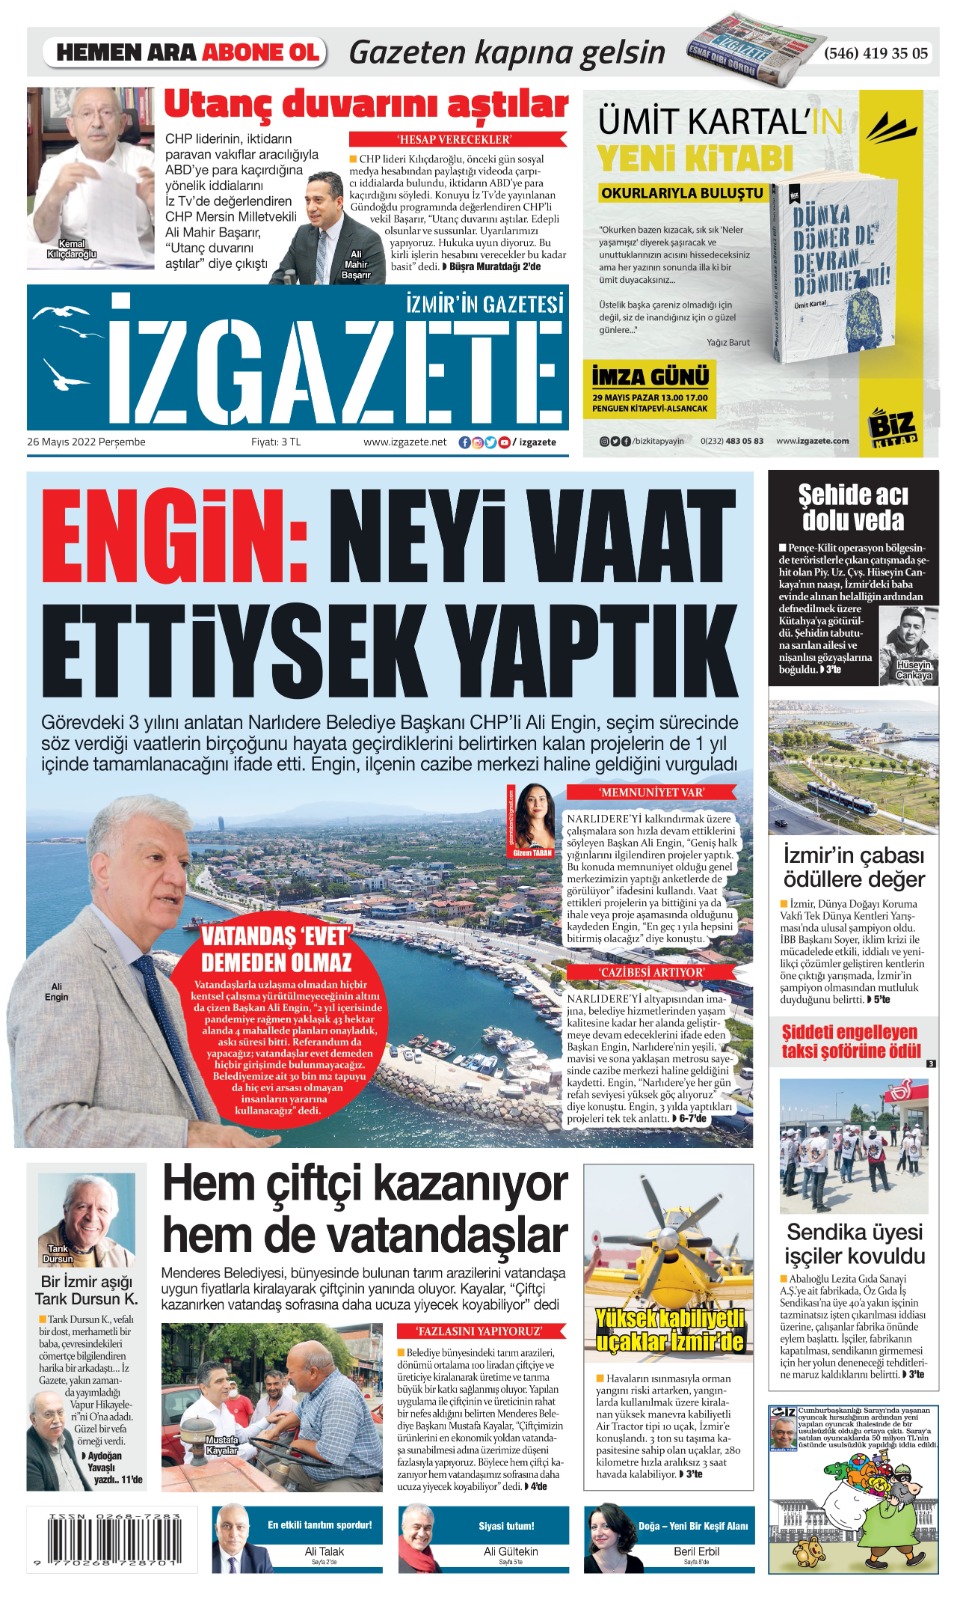 İz Gazete - İzmir'in Gazetesi - 26.05.2022 Manşeti